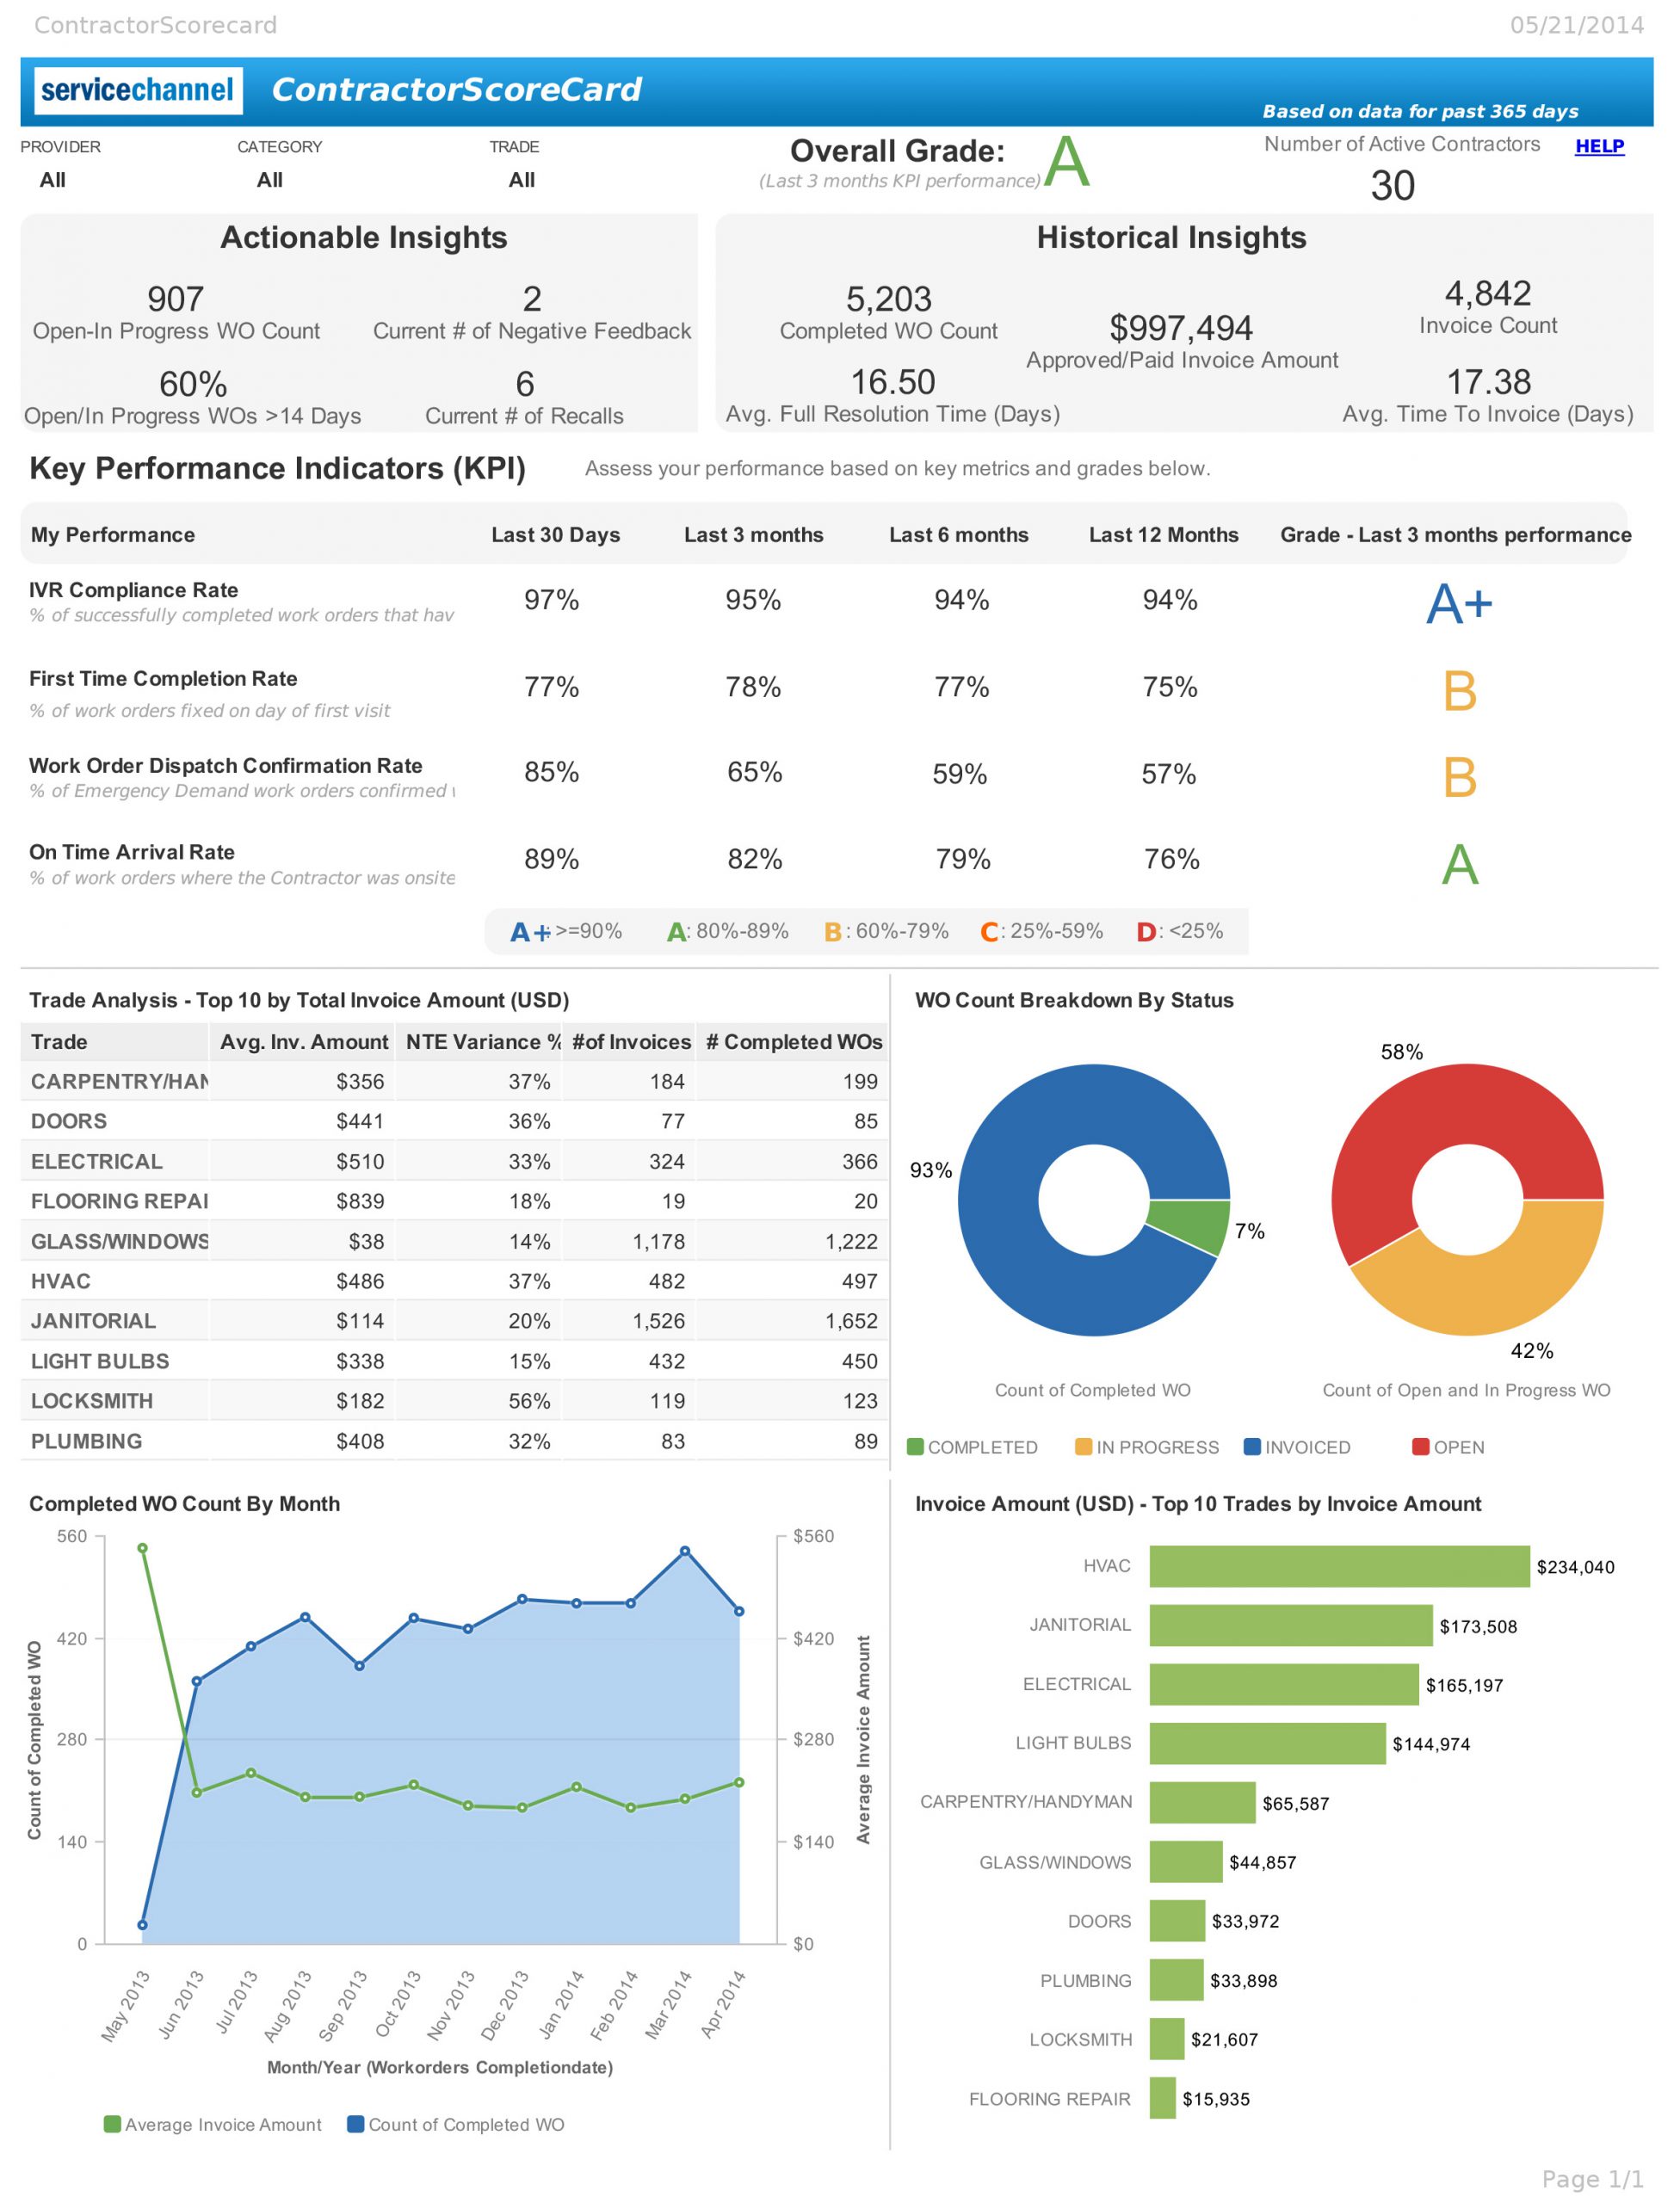 ServiceChannel_Analytics_Report